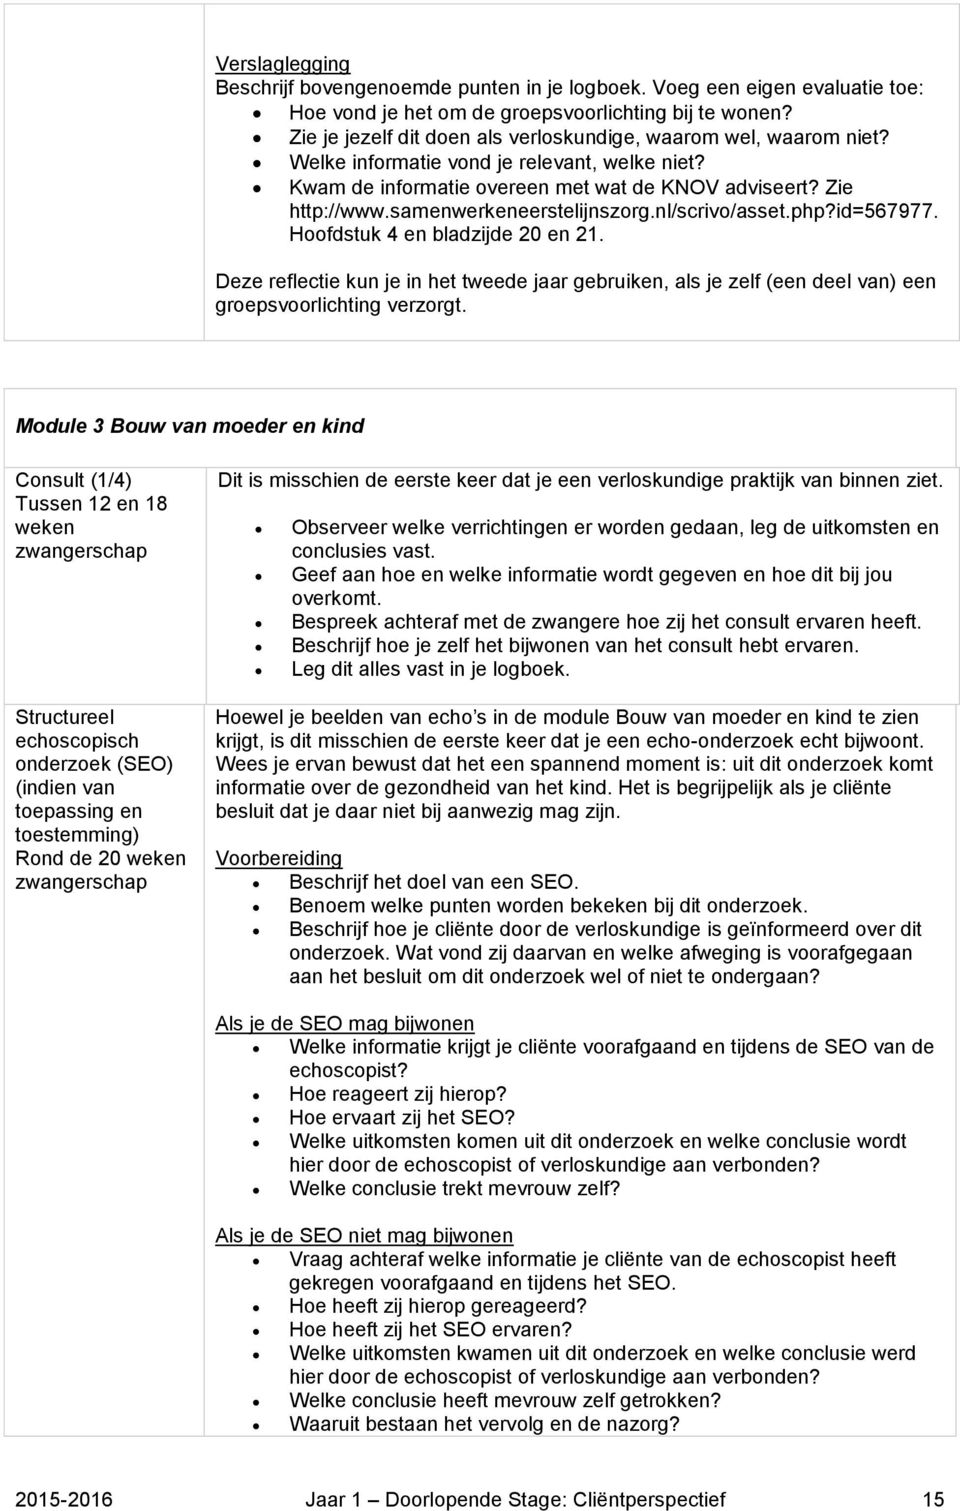 samenwerkeneerstelijnszorg.nl/scrivo/asset.php?id=567977. Hoofdstuk 4 en bladzijde 20 en 21.